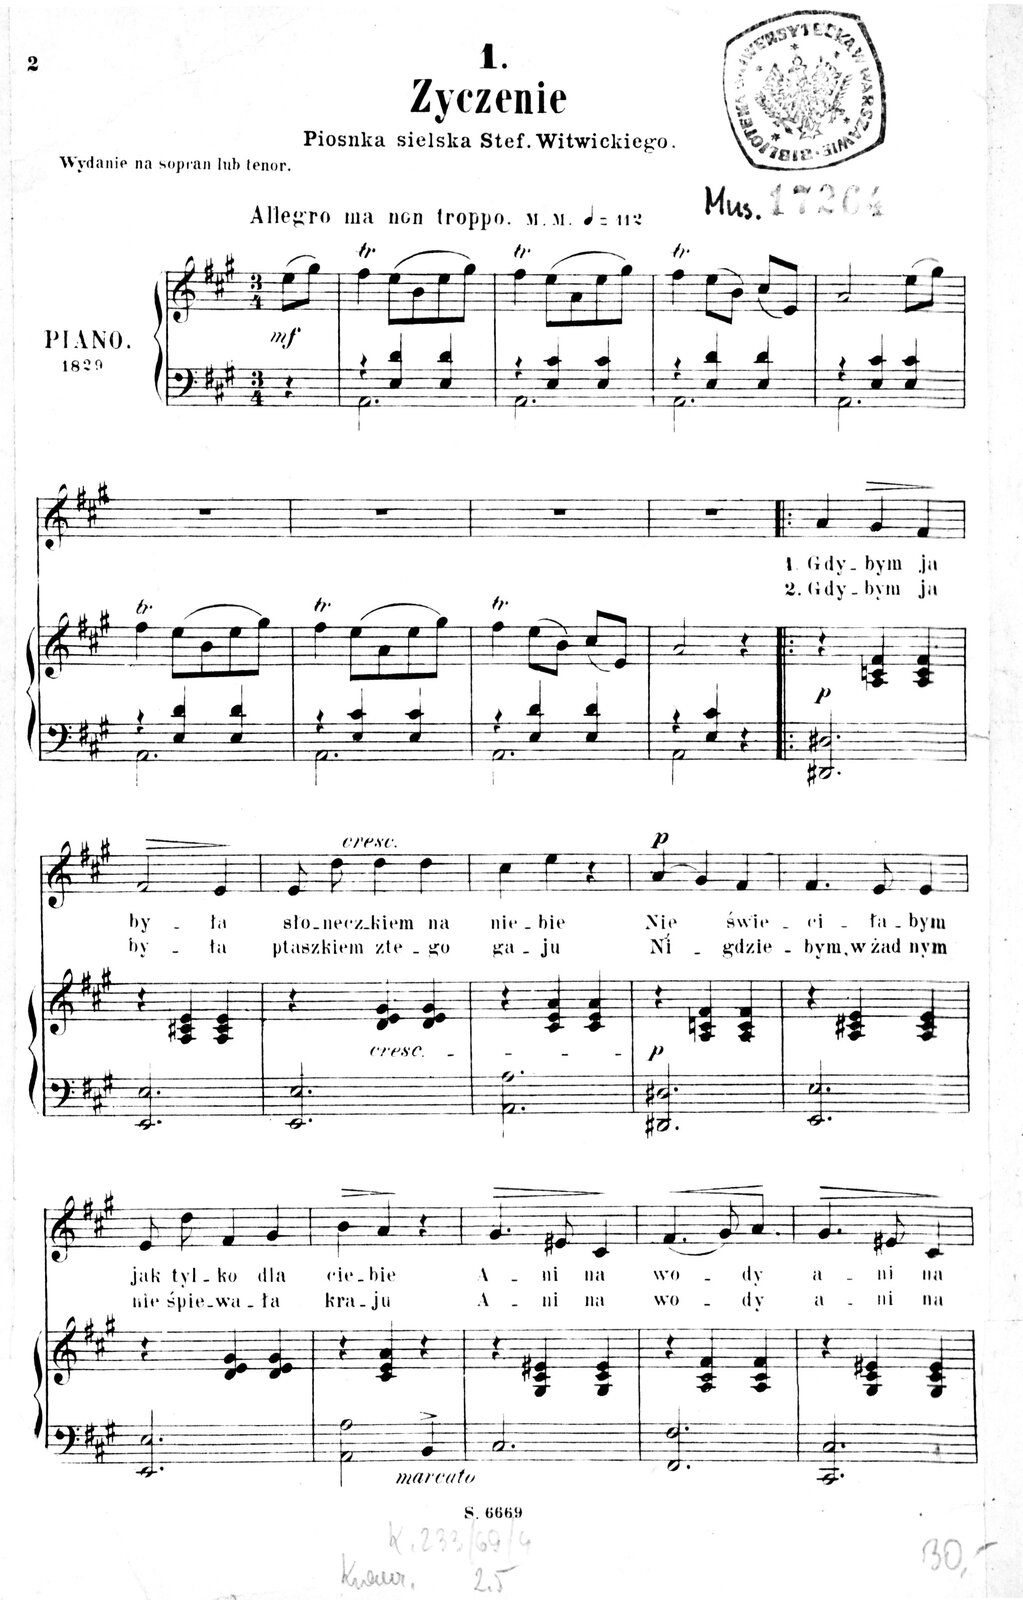 Zapis nutowy pieśni Życzenie autorstwa Fryderyka Chopina. Utwór rozpoczyna się ośmio taktowym wstępem. Na każdą pierwszą część taktu we wstępie przypada tryl. Od dziewiątego taktu pojawia się partia wokalna, a akompaniament przybiera formę dużo prostszą, przypominającą walca: na raz gra lewa ręka na dwa i trzy prawa. Na górze strony umieszczony został tytuł „Życzenie”, pod nim widnieje napis - „Piosenka sielska Stef. Witwickiego”. Obok znajduje się pieczęć z orłem.